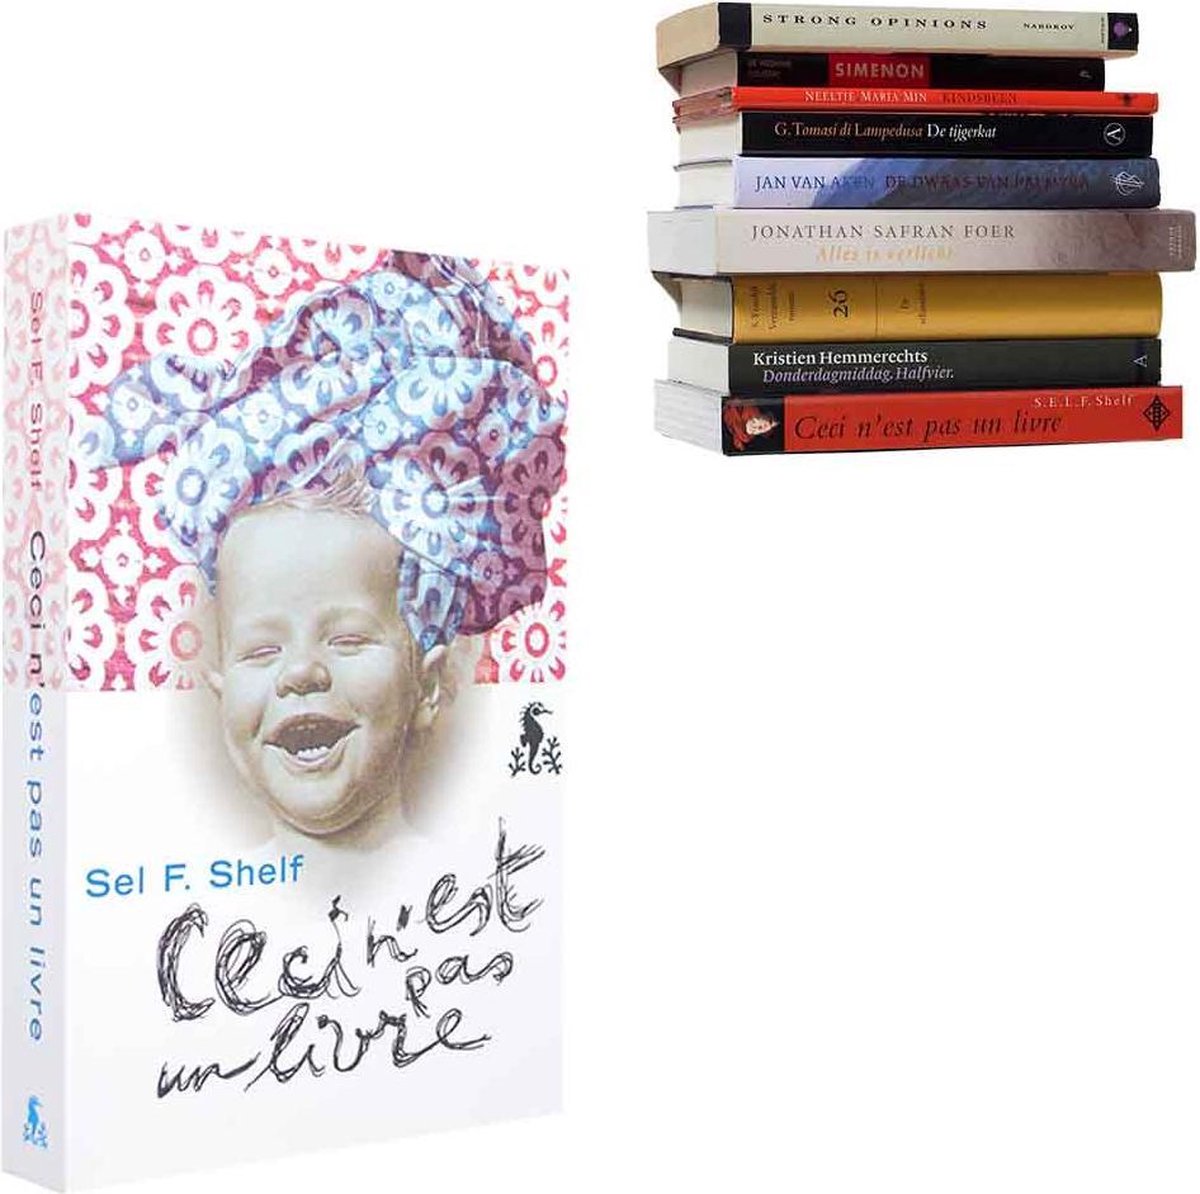 Boekenplank - Selfshelf - Baby - Roze - Blauw - Ceci n'est pas un livre - L 22 x B 15 x H 3 cm